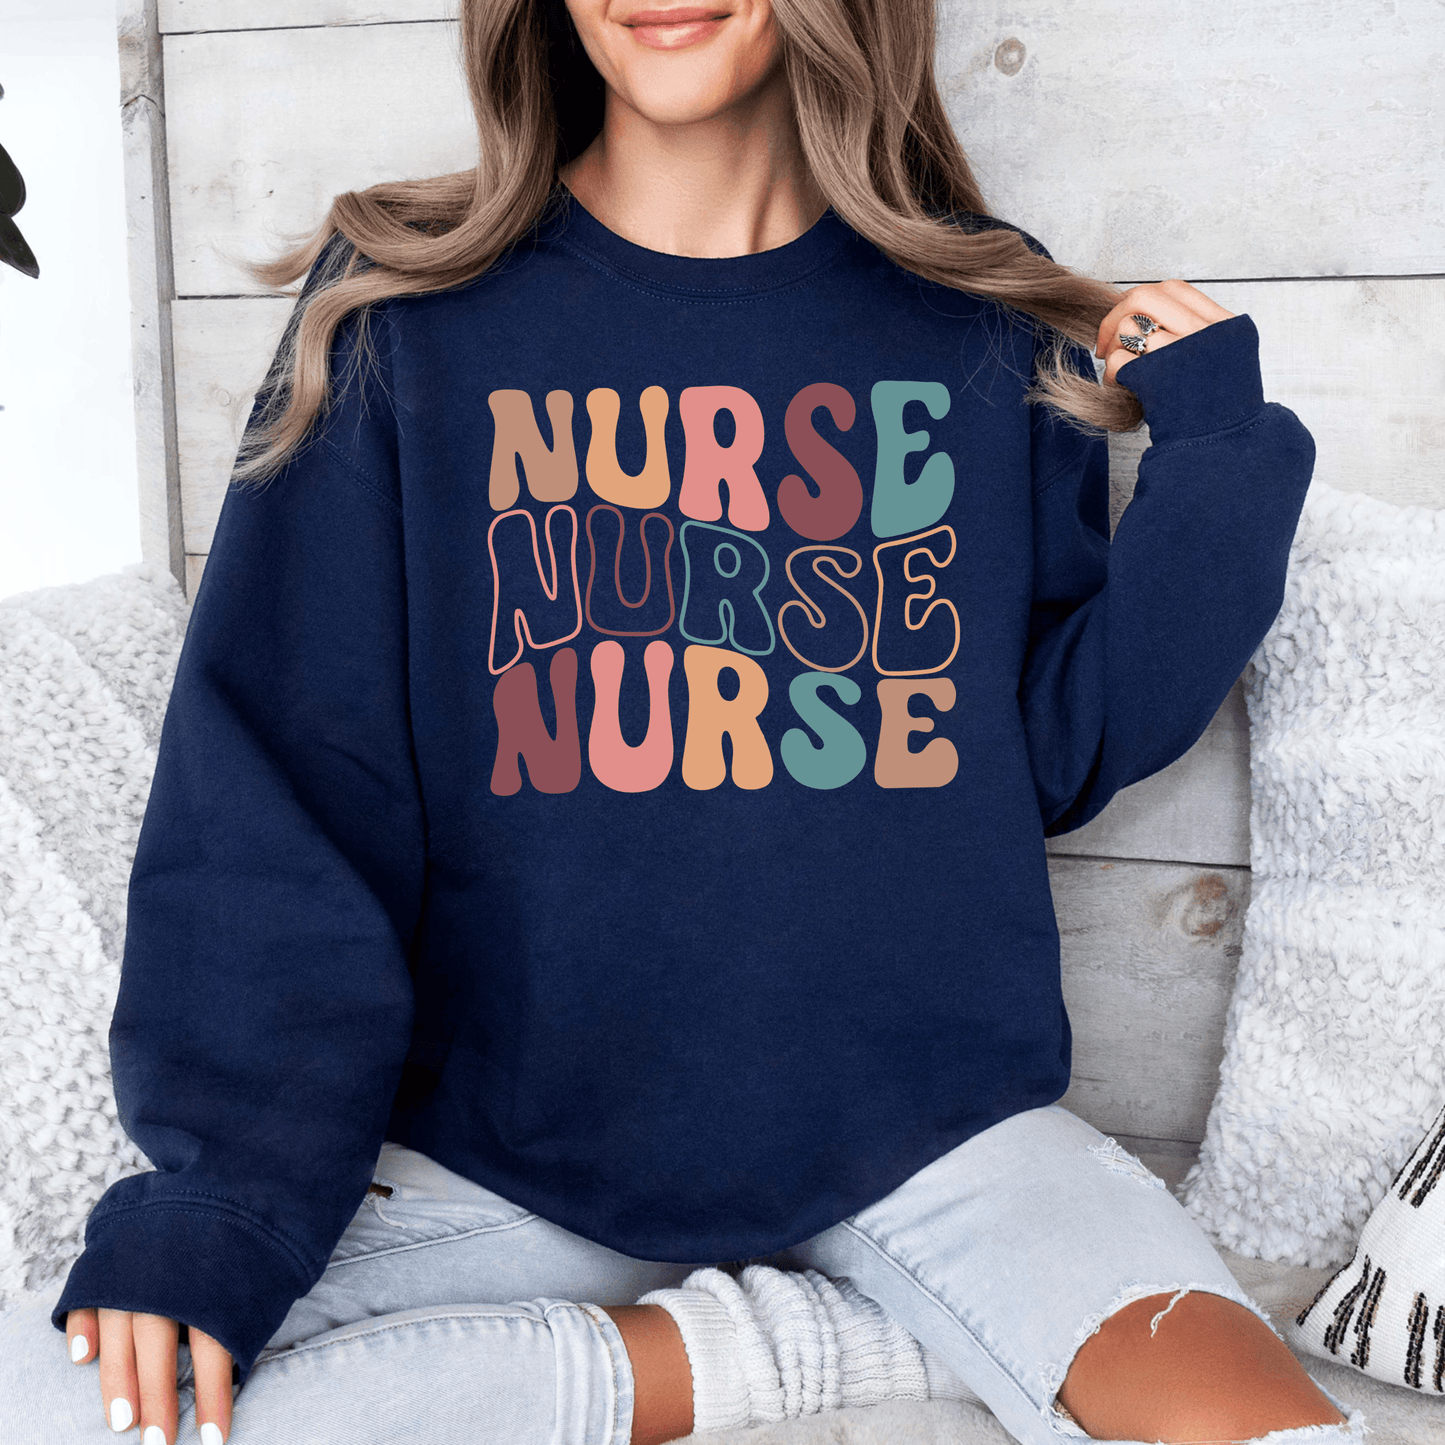 Krankenschwester Sweatshirt - Bunt und Motivierend - GiftHaus